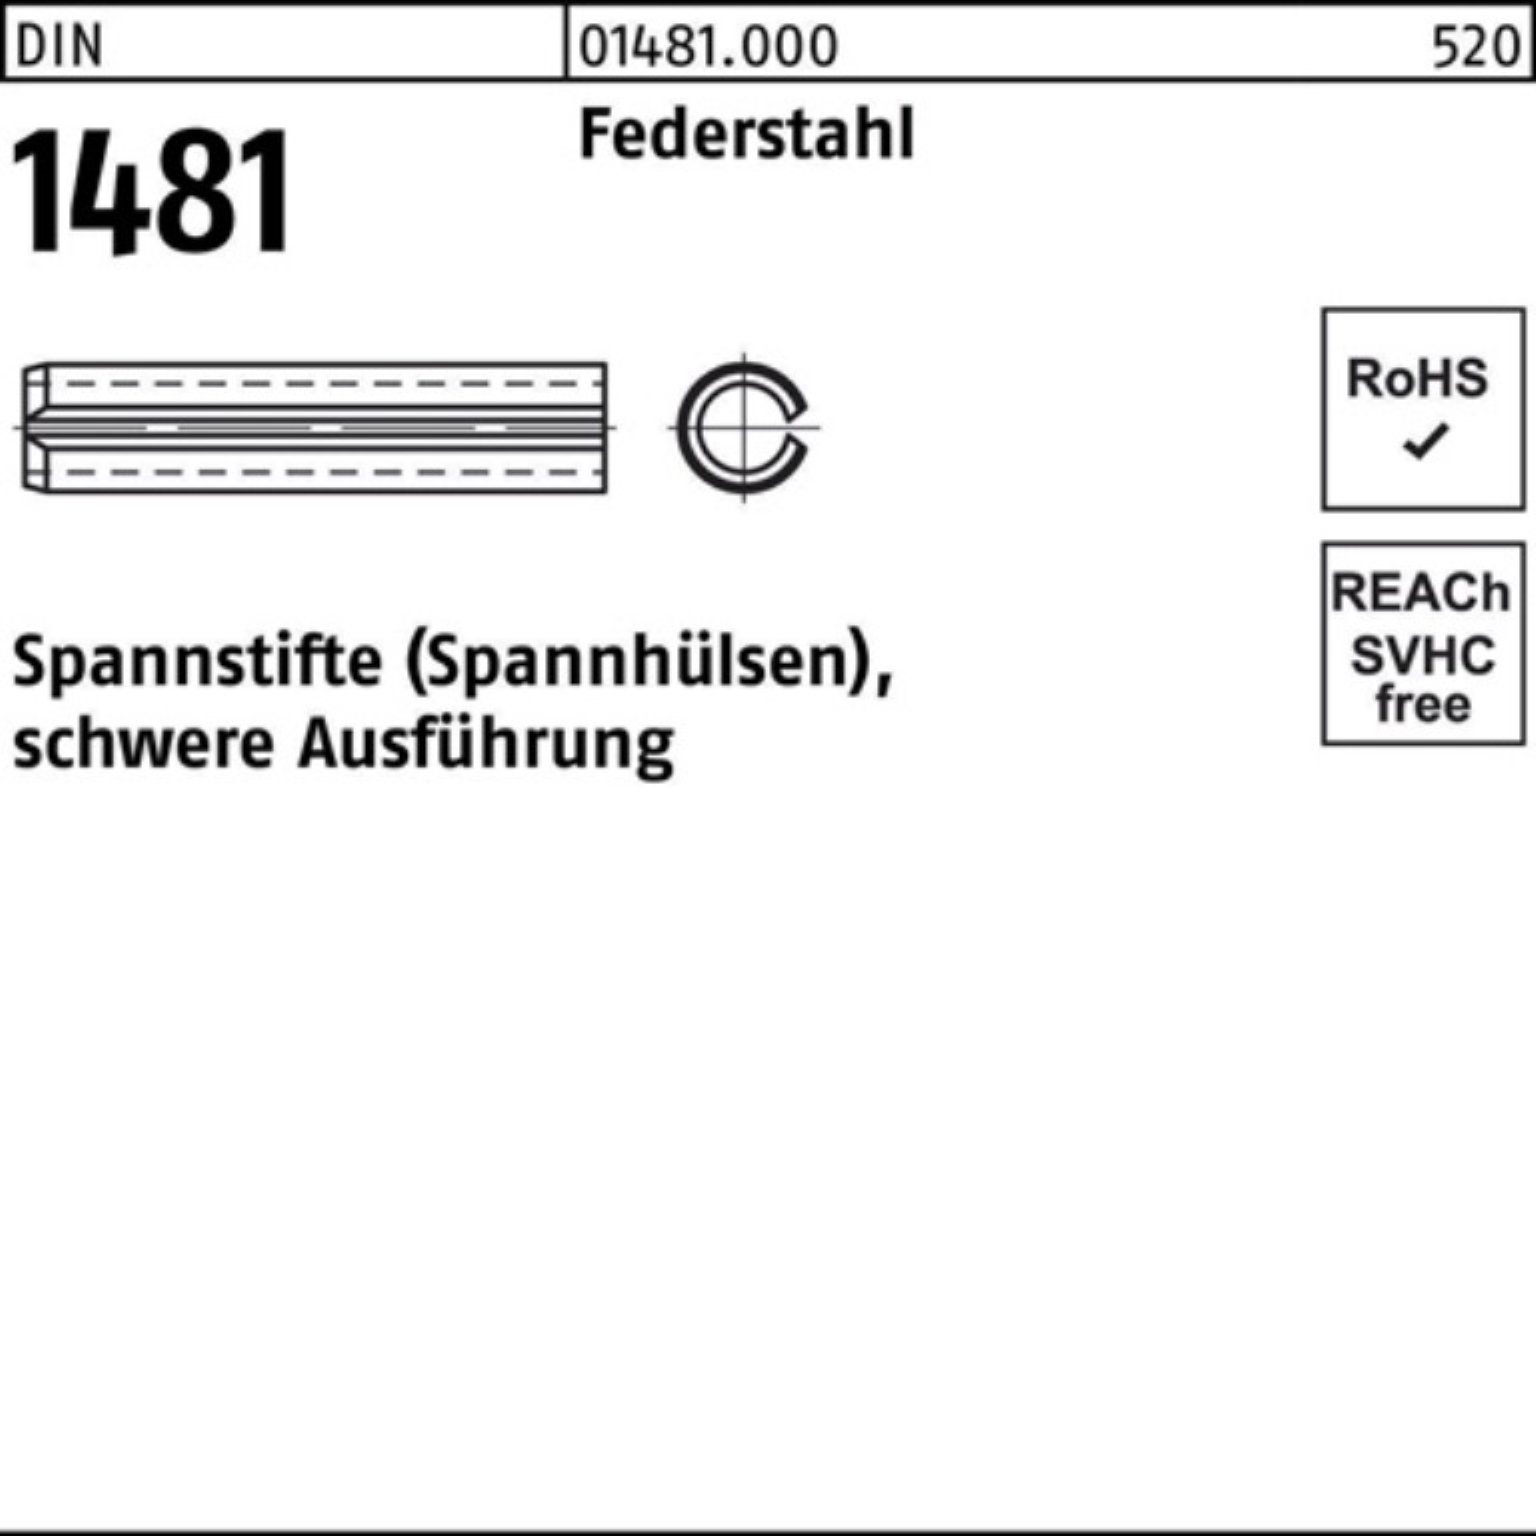 Reyher Spannstift 100er 18x Federstahl schwere 1481 Ausführung Pack DIN 140 Spannstift